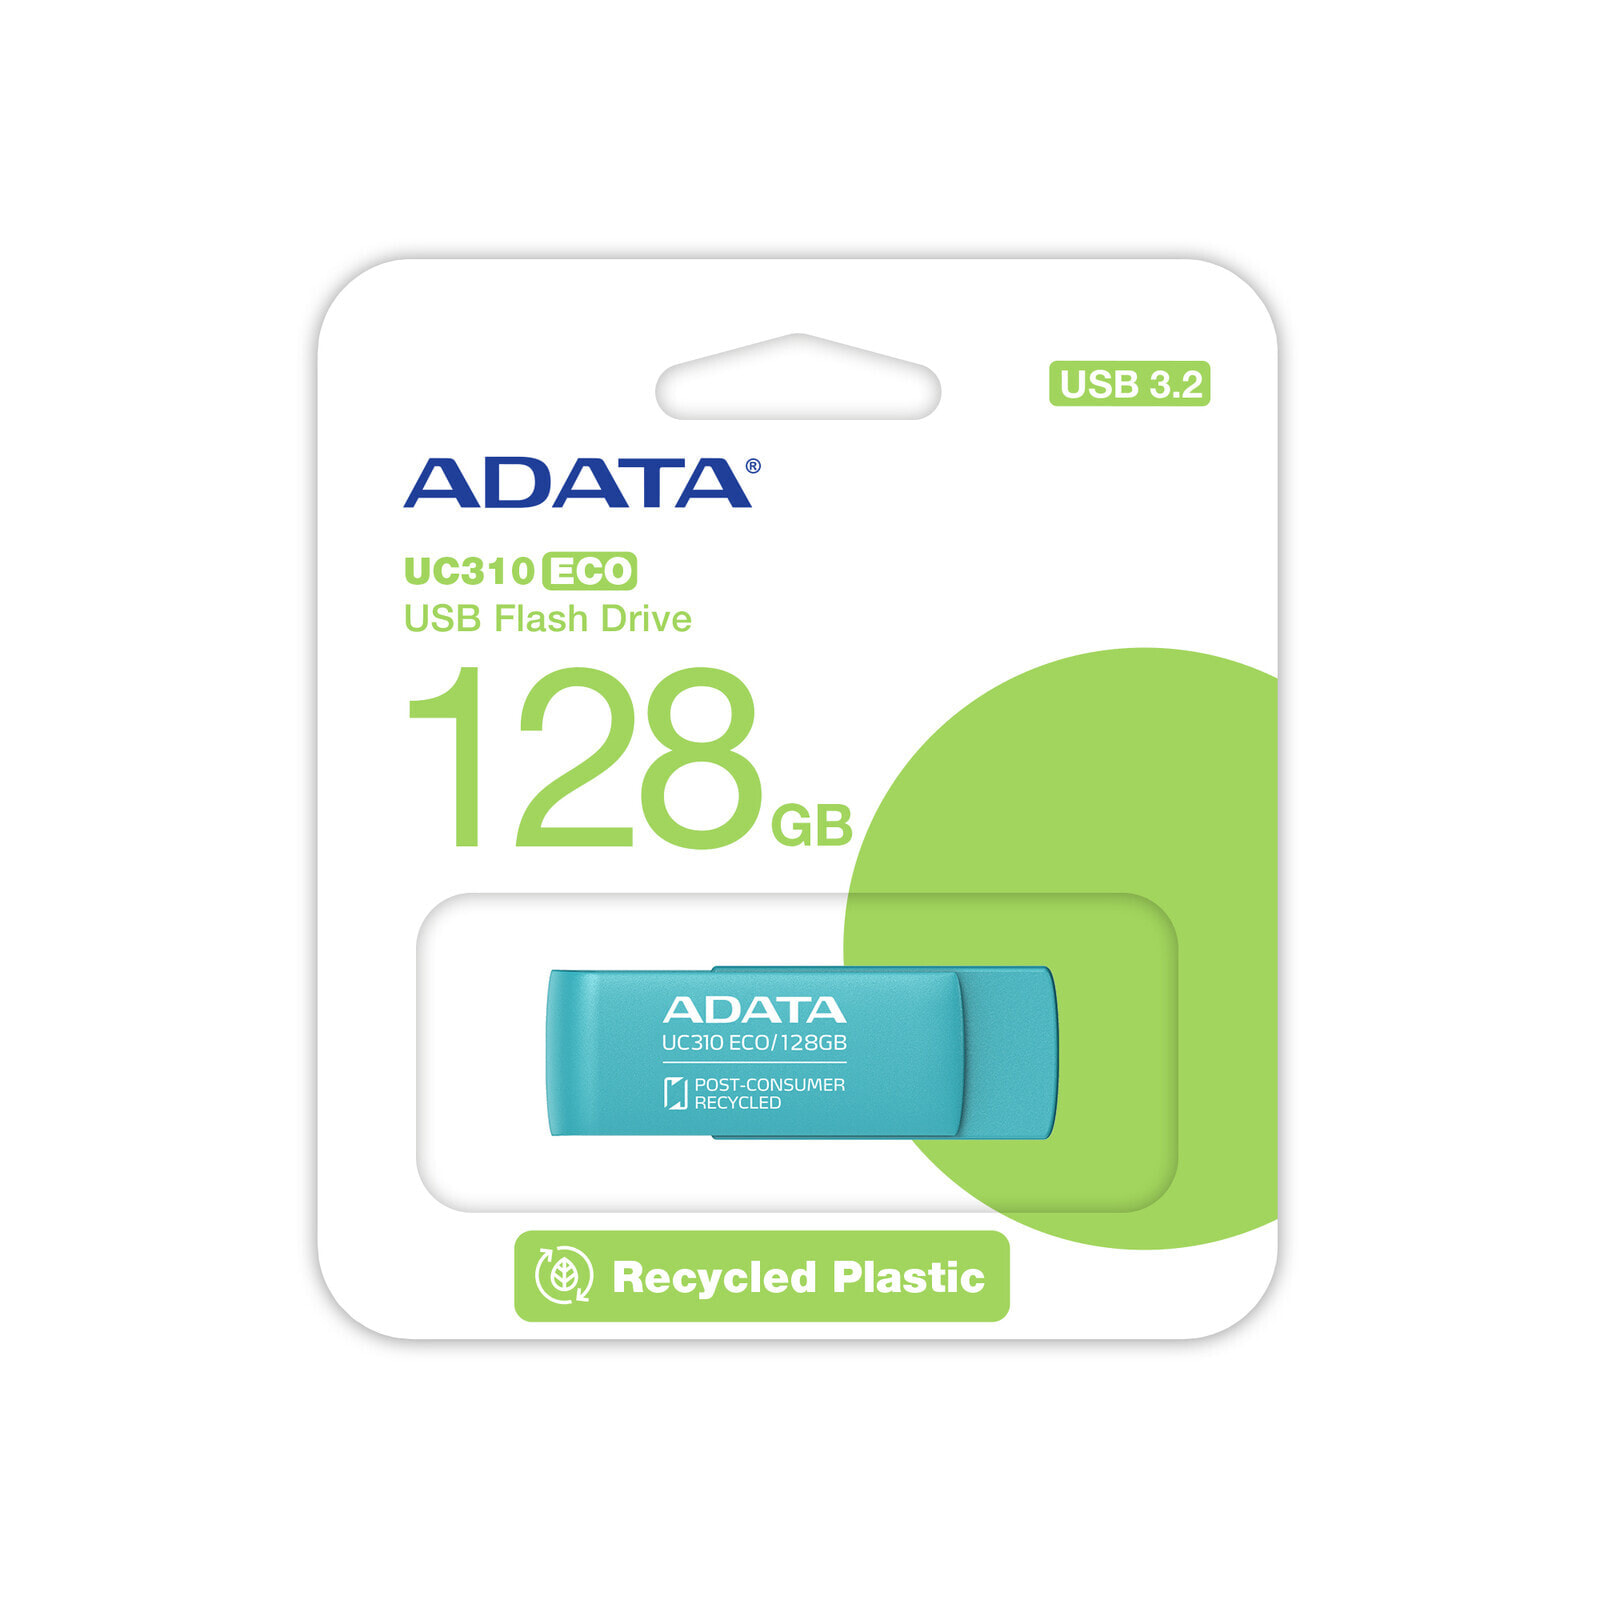 ADATA UC310 ECO 128GB (grün, USB-A 3.2 Gen 1)